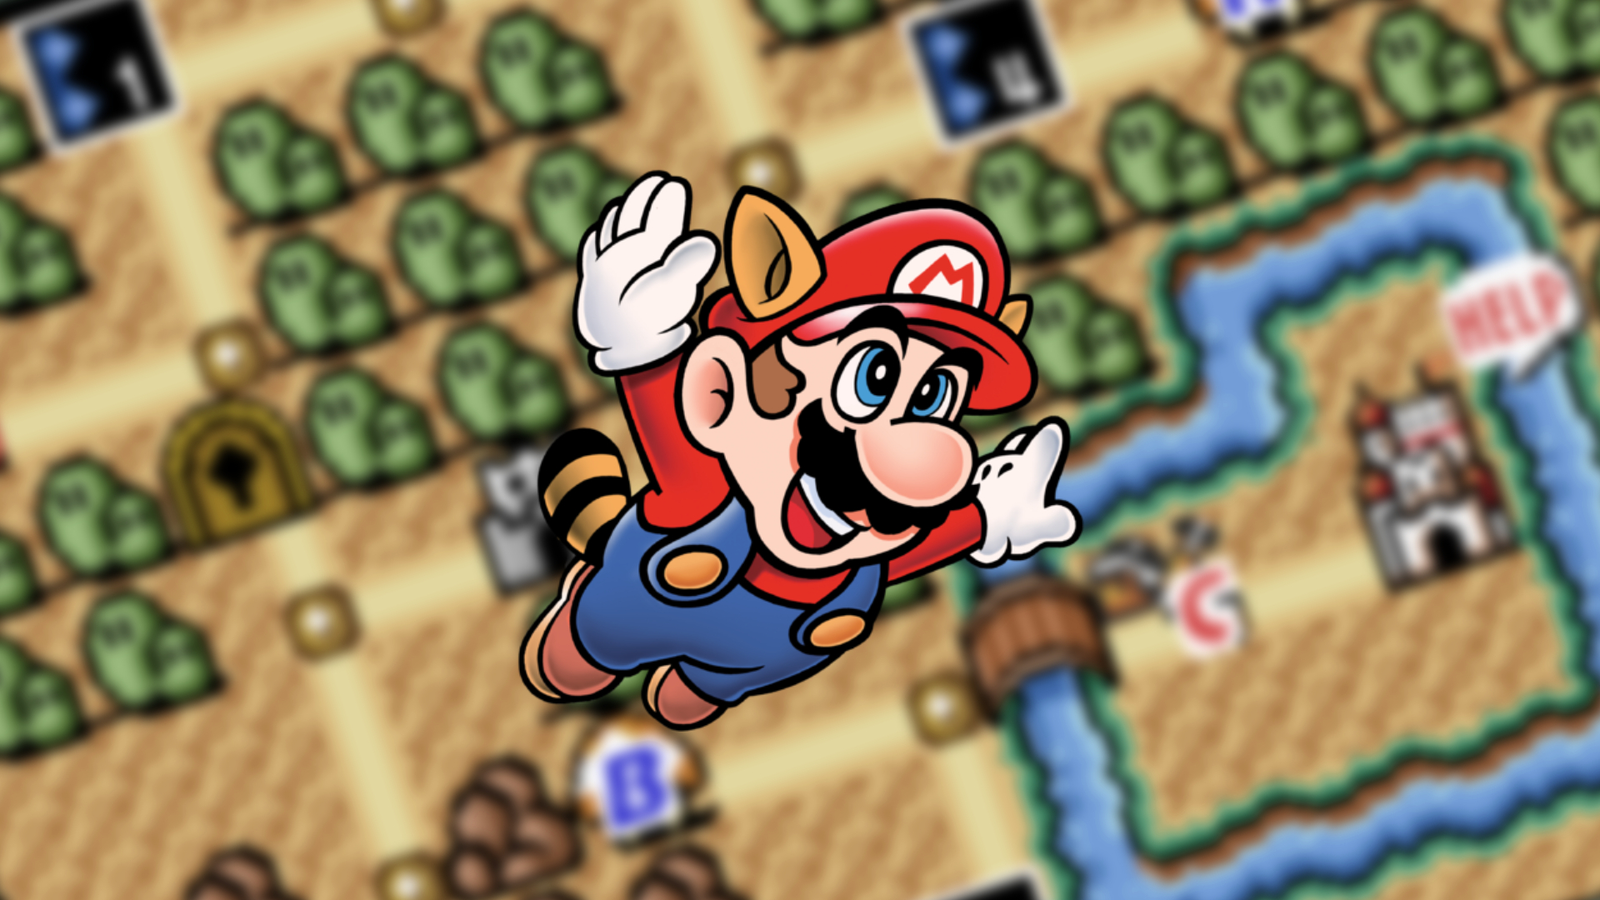 Wii U Review – New Super Mario Bros U – RetroGame Man